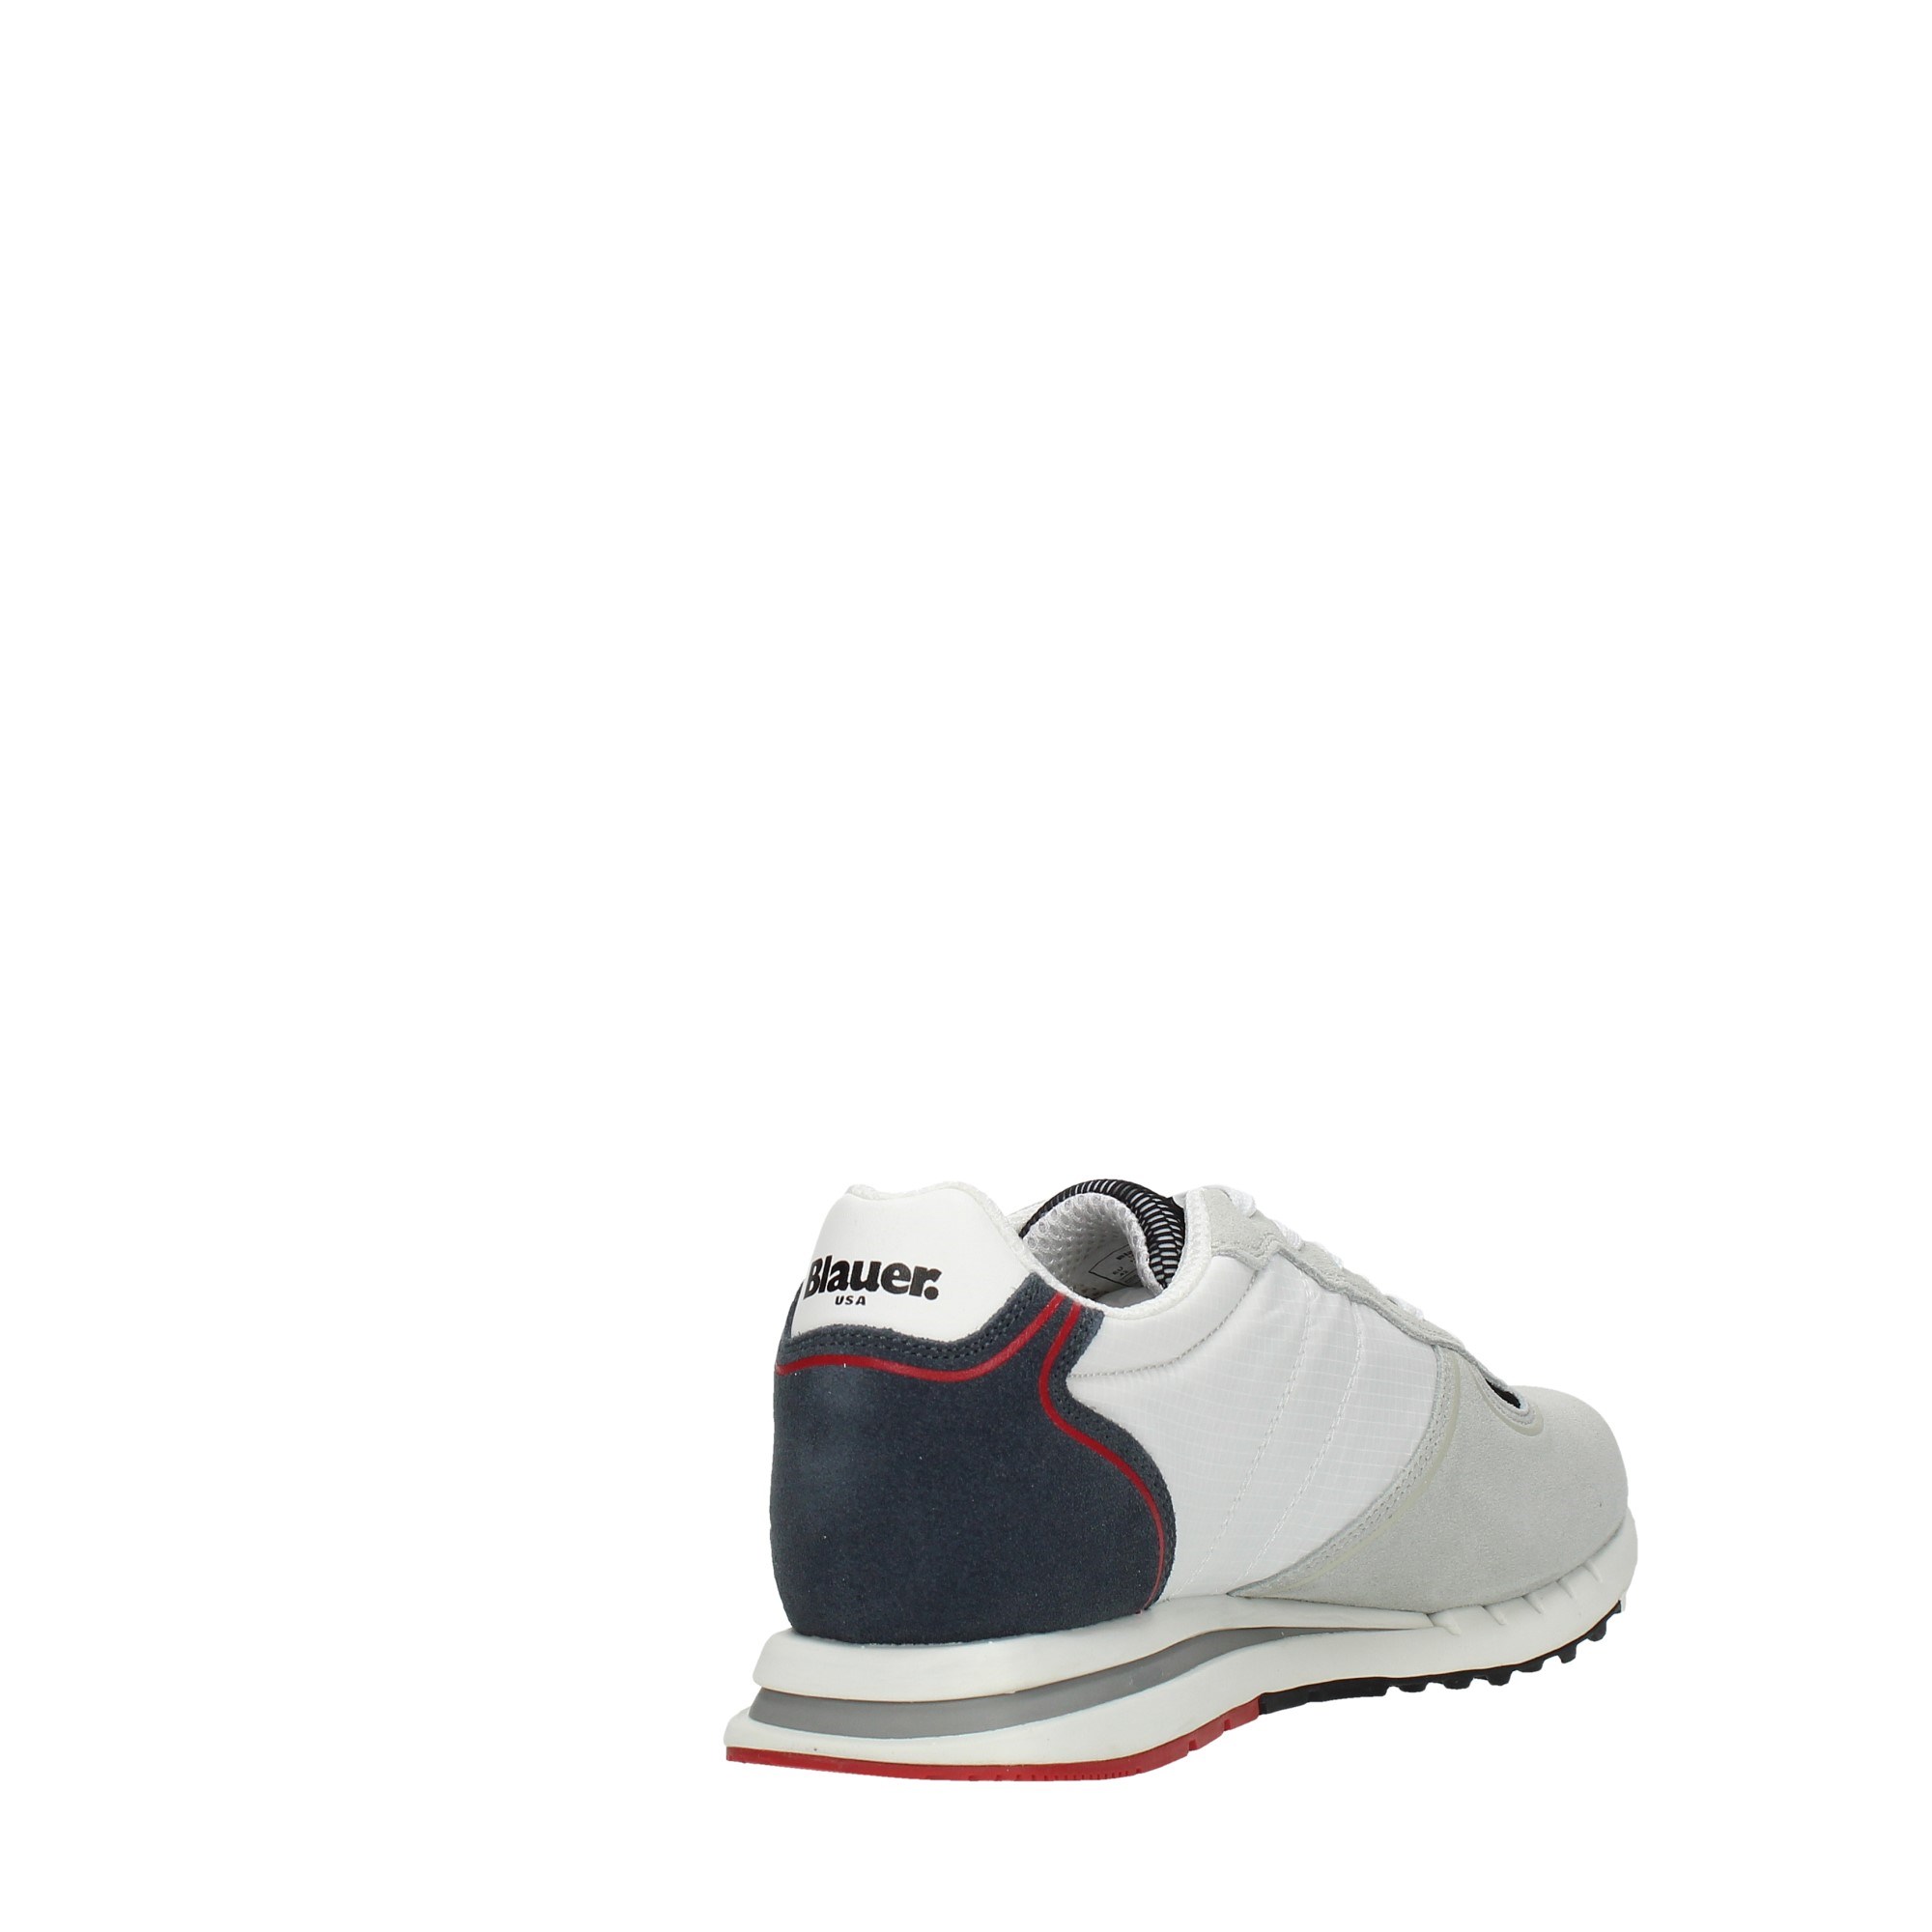 Blauer Shoes Man Sneakers S2QUARTZ01/CAM